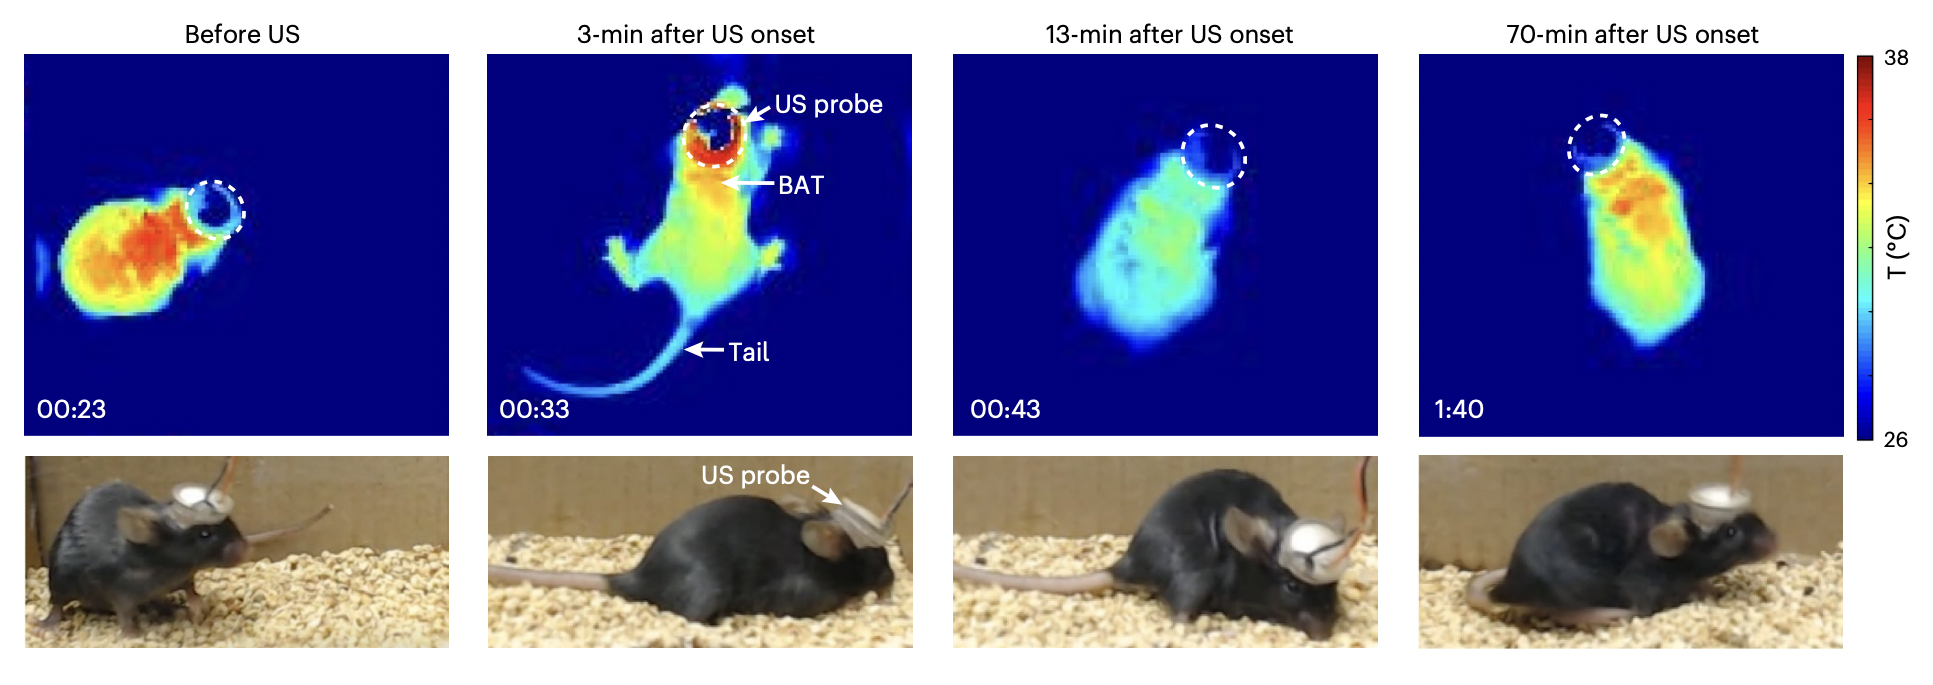 Infrarot-Wärmebilder einer Maus zeigen, wie ihre Körpertemperatur sinkt, wenn sie in einen starren Zustand versetzt wird.  Eine Reihe von Fotos am unteren Rand des Rahmens zeigt normale Fotos der braunen Maus, die einen winzigen Helm (das Ultraschallgerät) trägt.